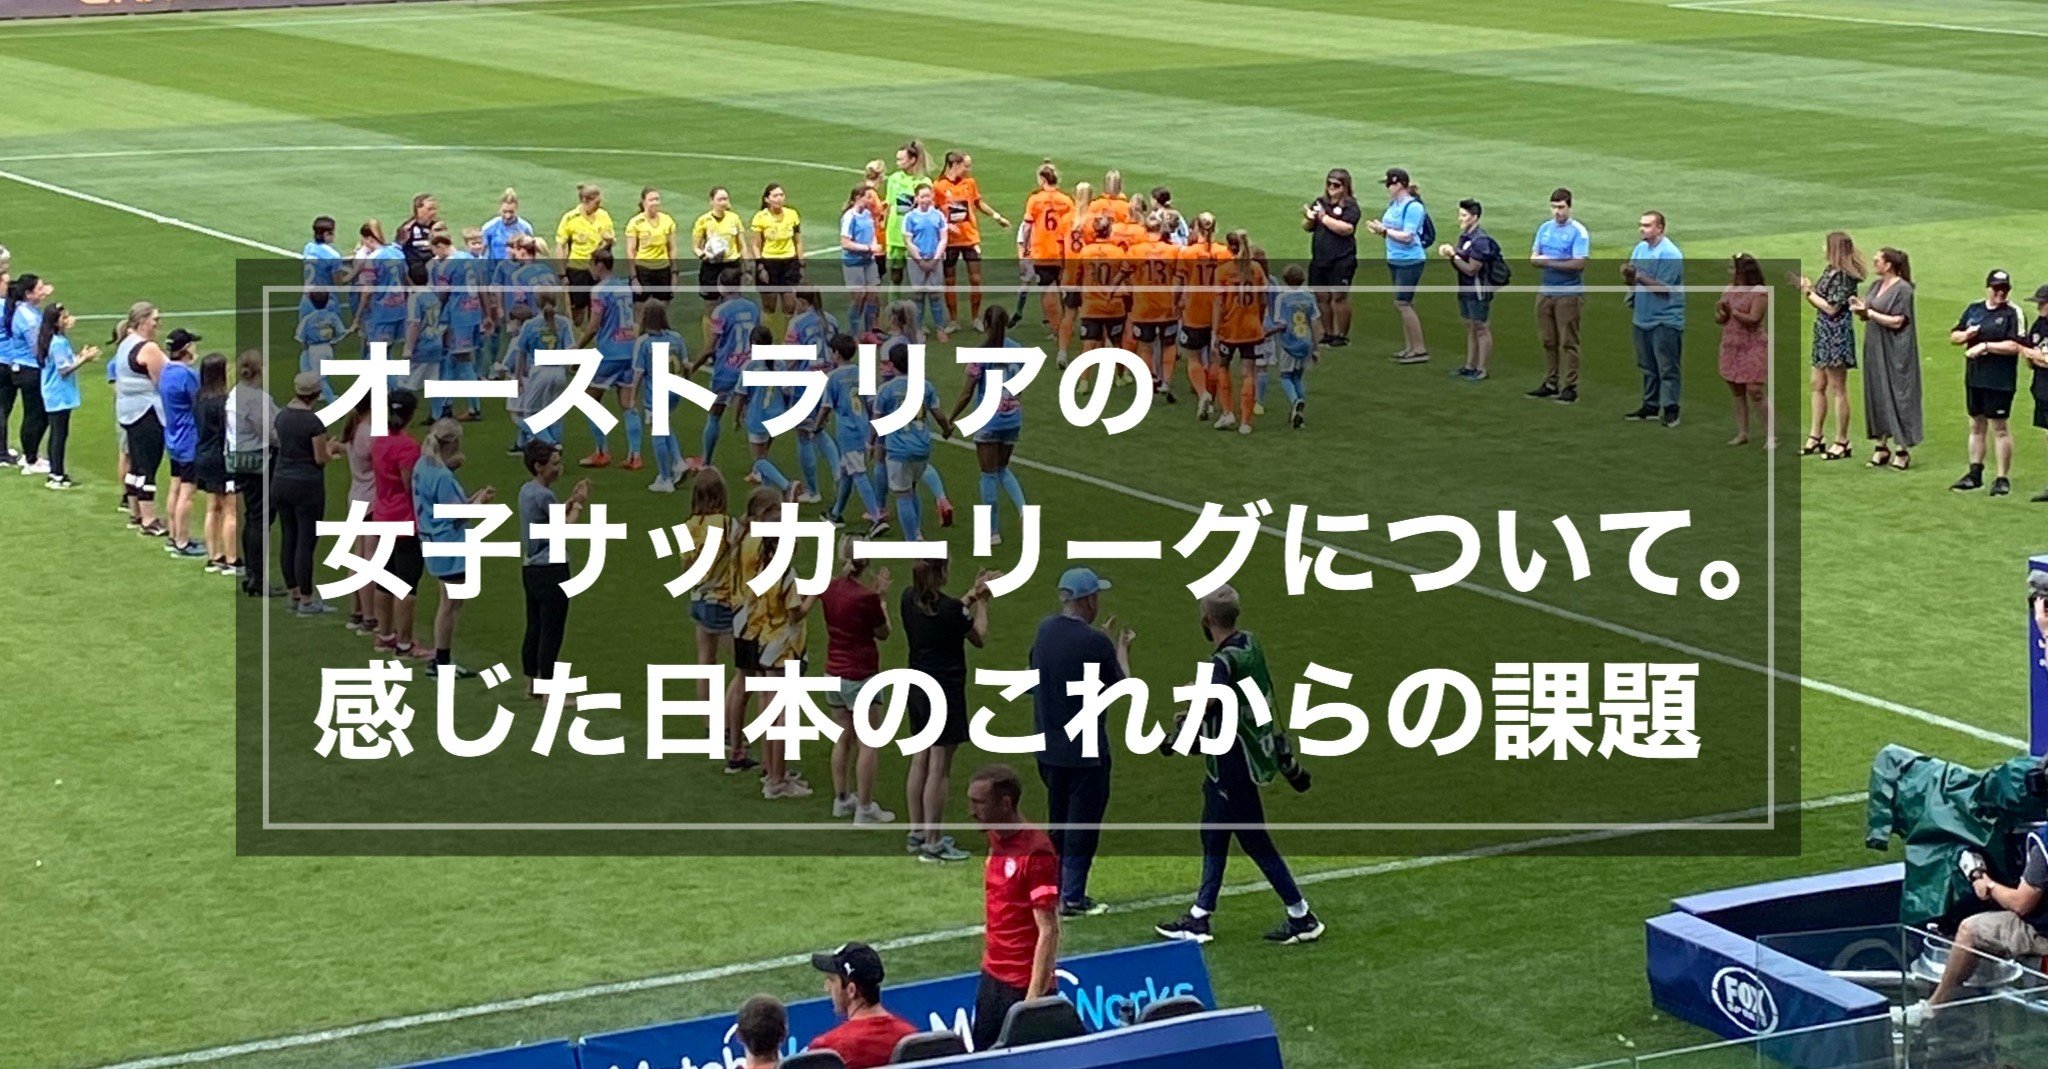 オーストラリアの女子サッカーリーグについて 感じた日本のこれからの課題 Reona Note